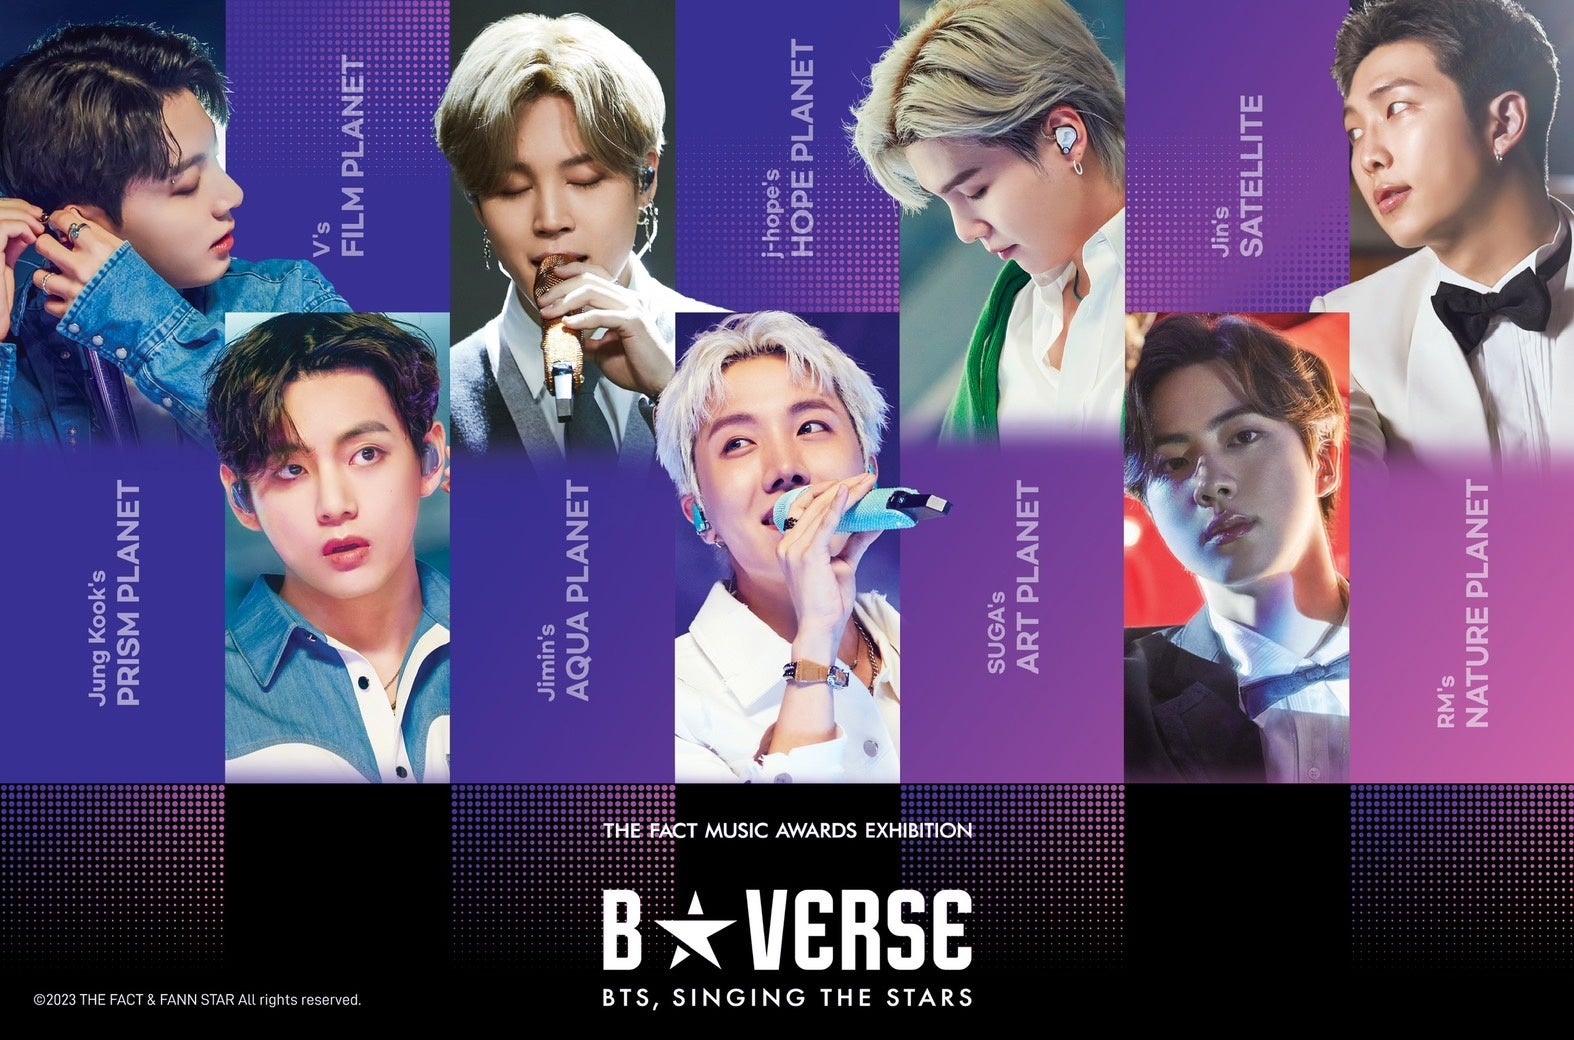 「B★VERSE」(BTS、星を歌う) 入場チケット付き宿泊プラン発売決定！